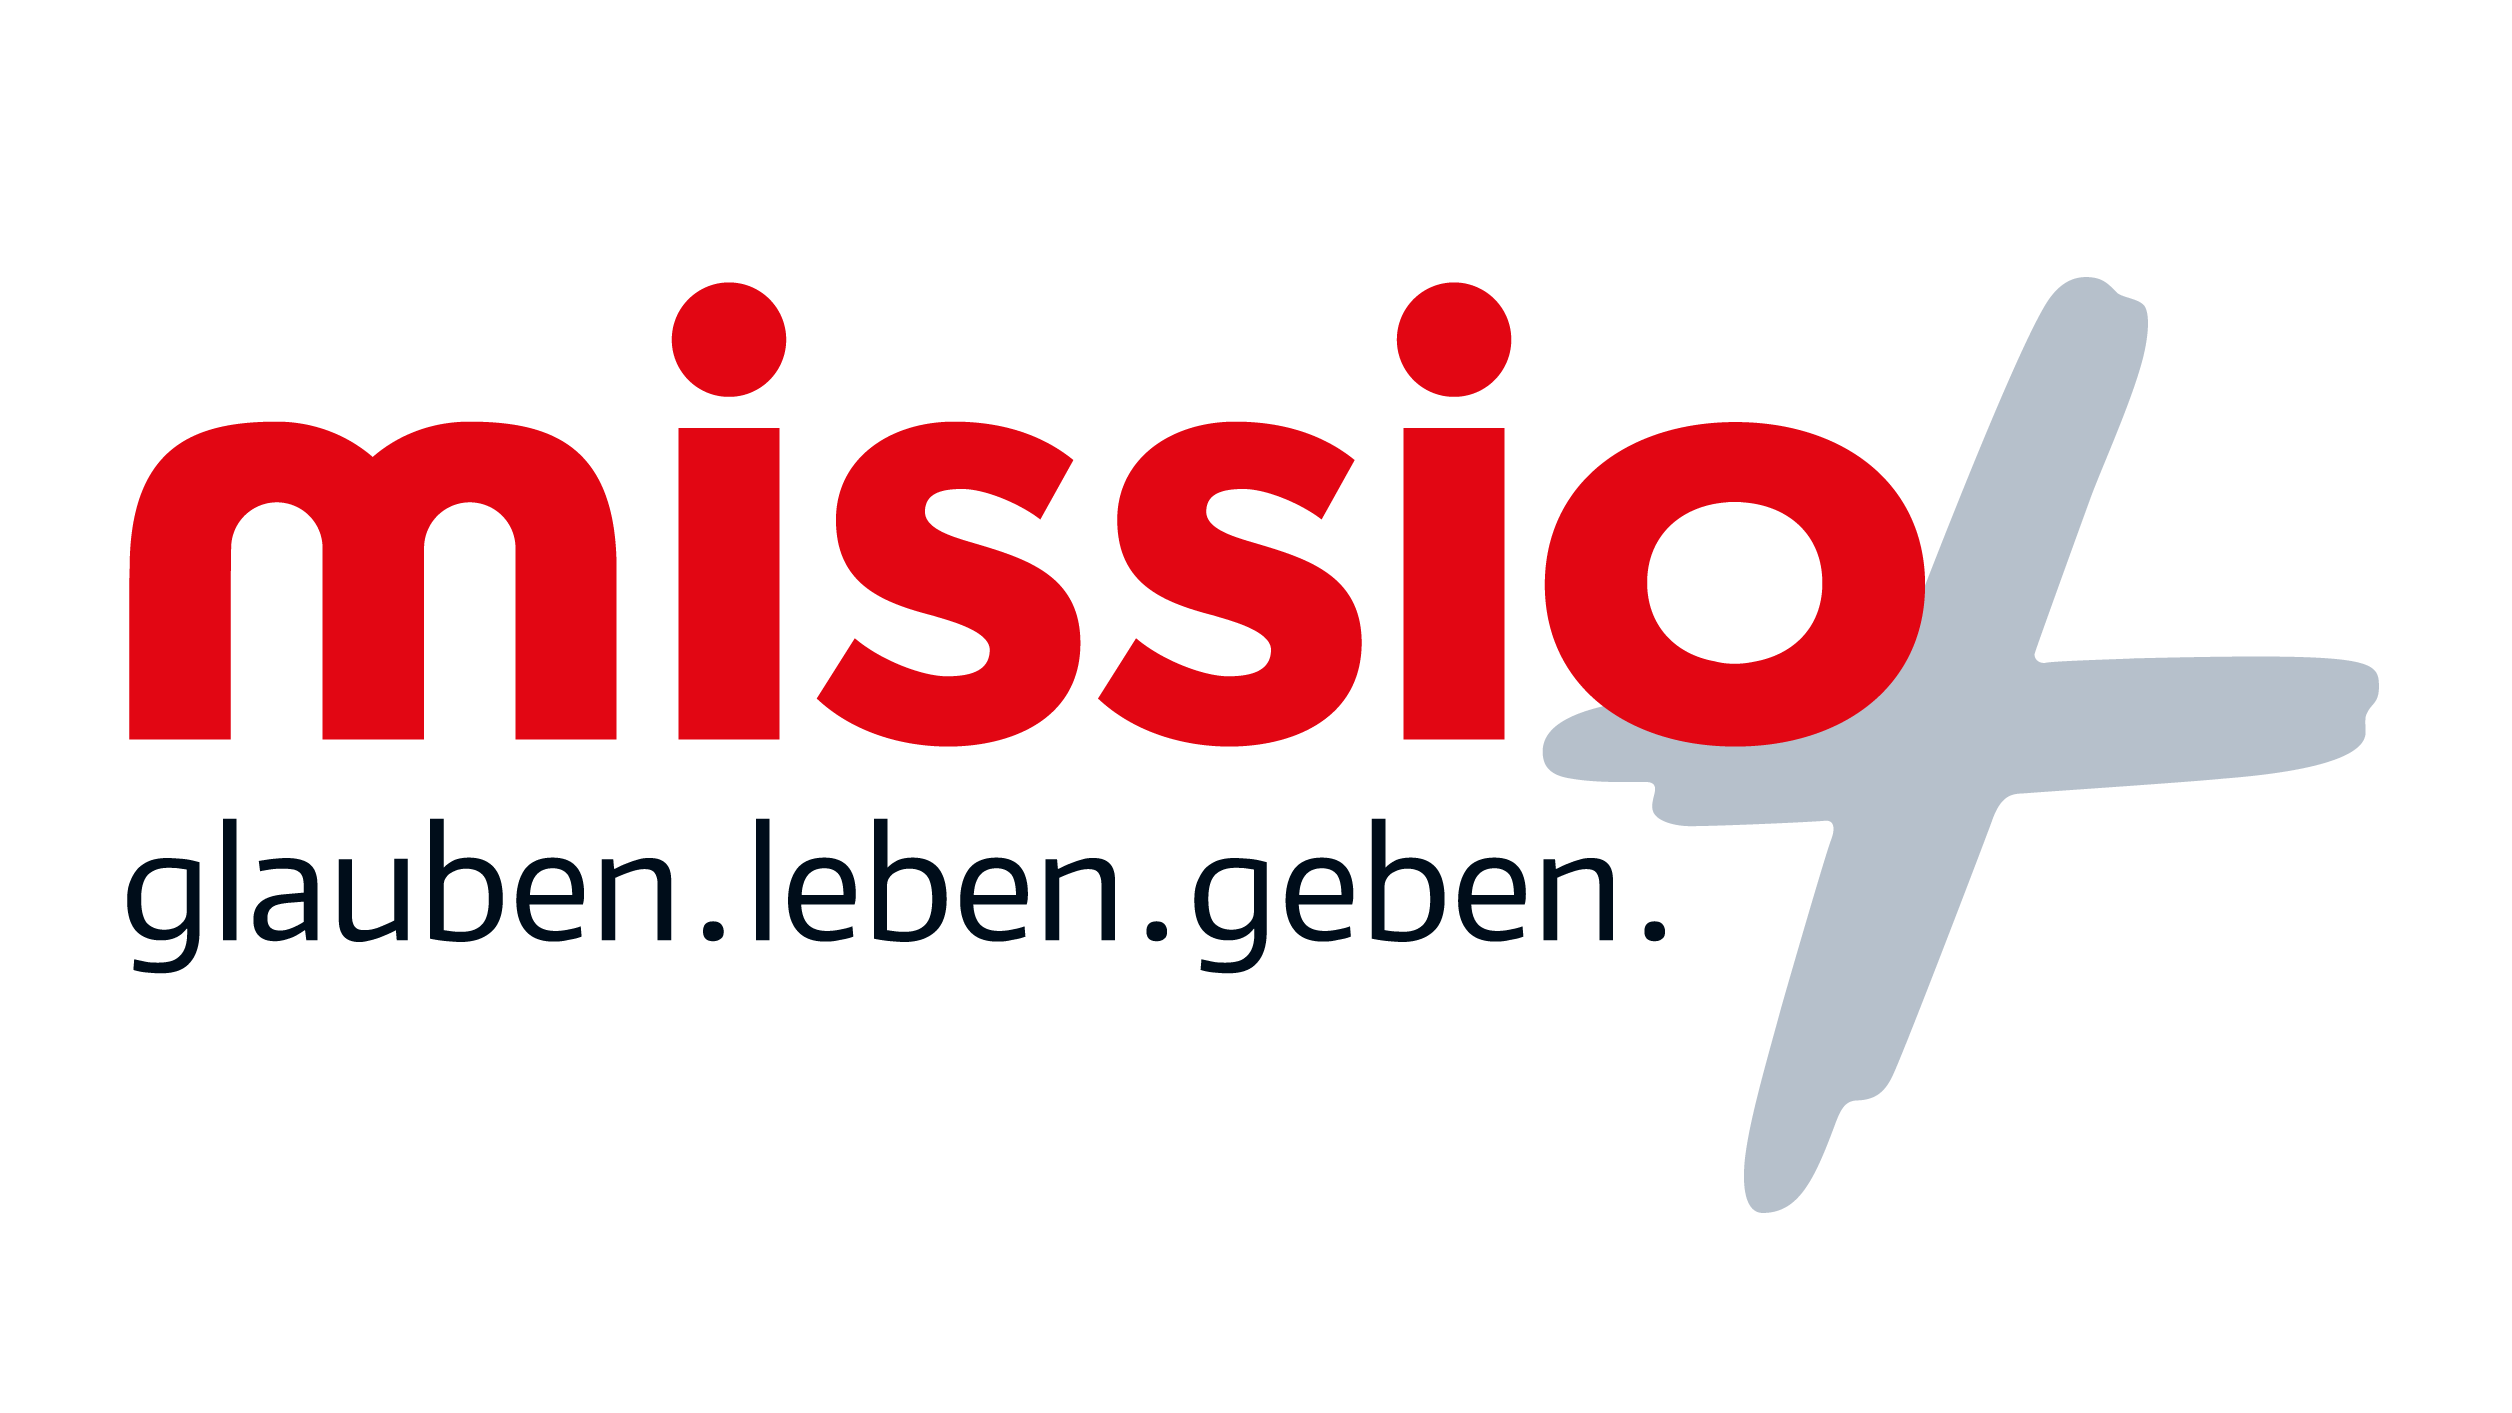 Das missio-Logo als GIF-Datei ohne transparenten Hintergrund.